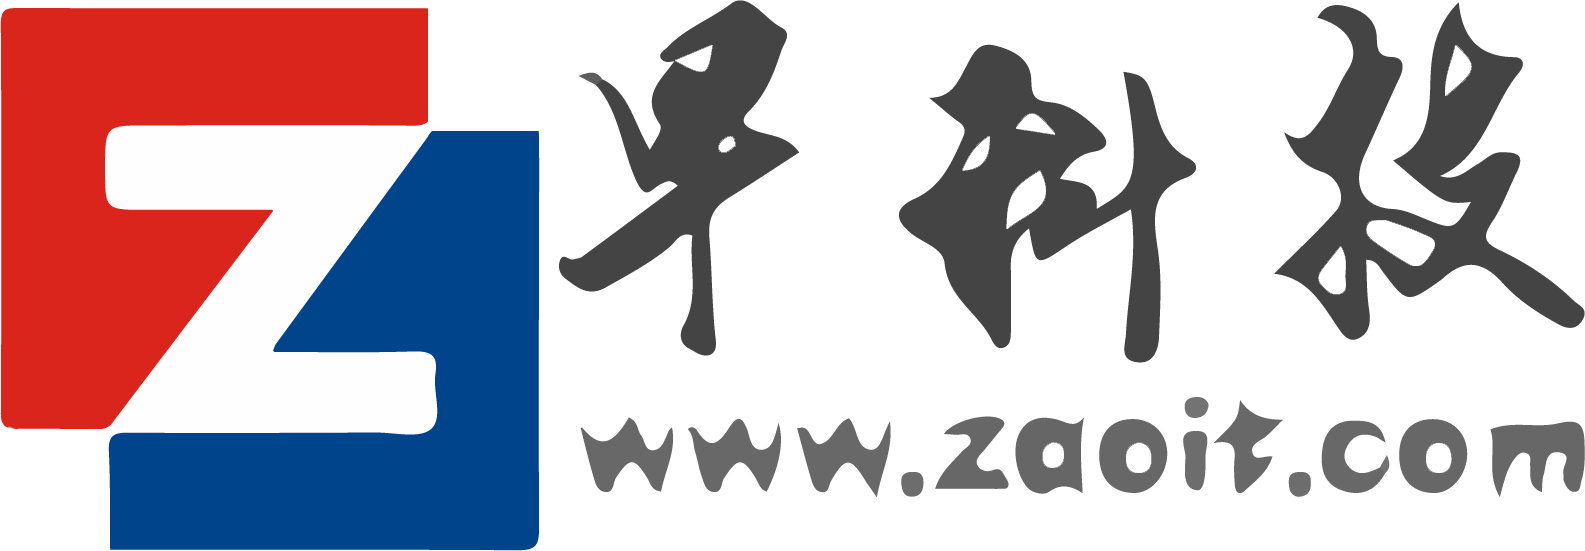 zaoit-logo.png